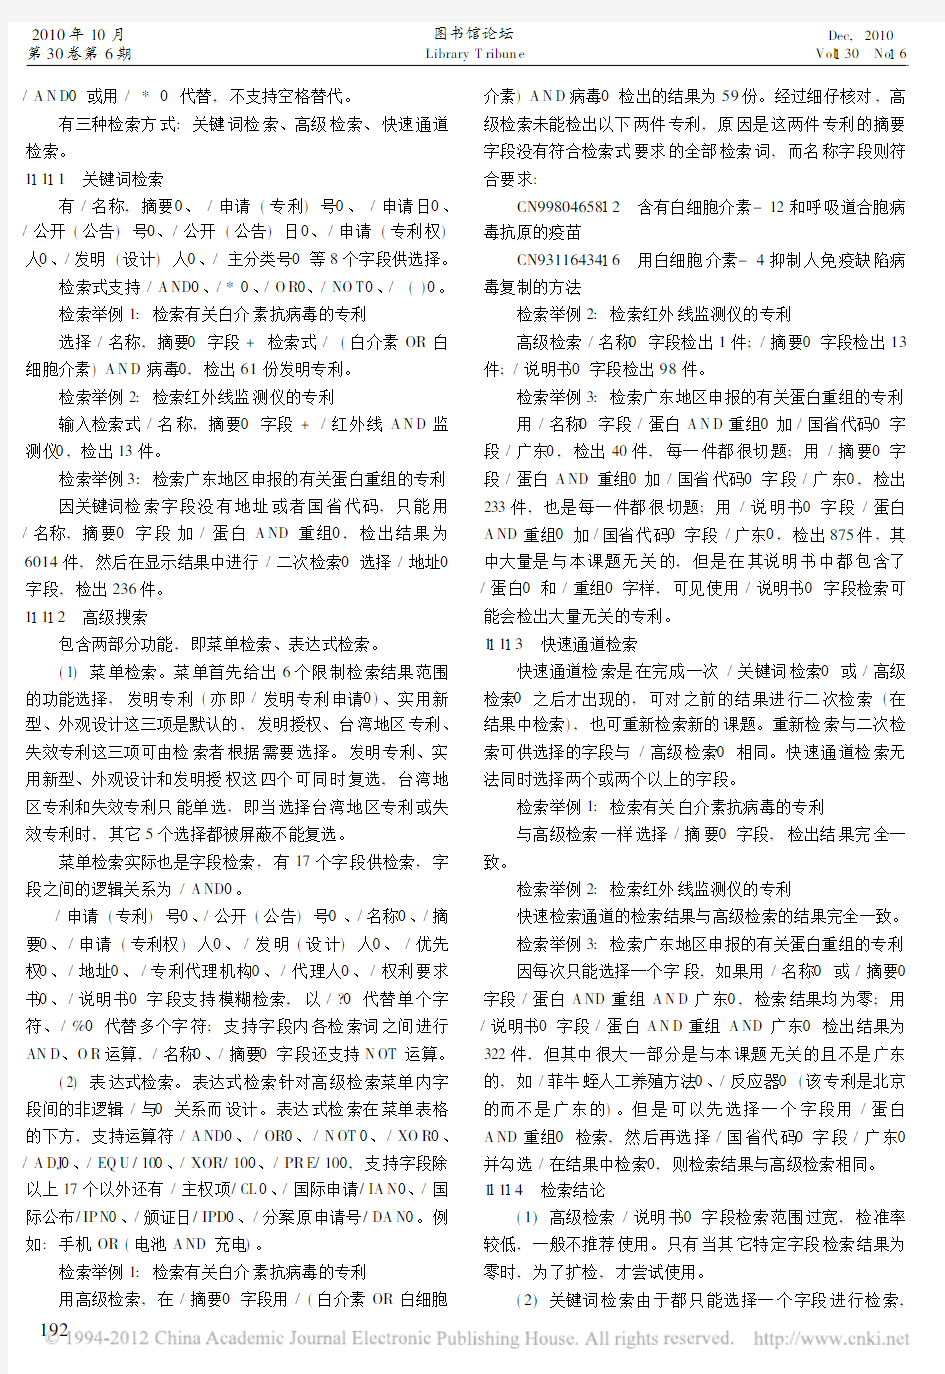 九个常用中国专利检索网站比较研究